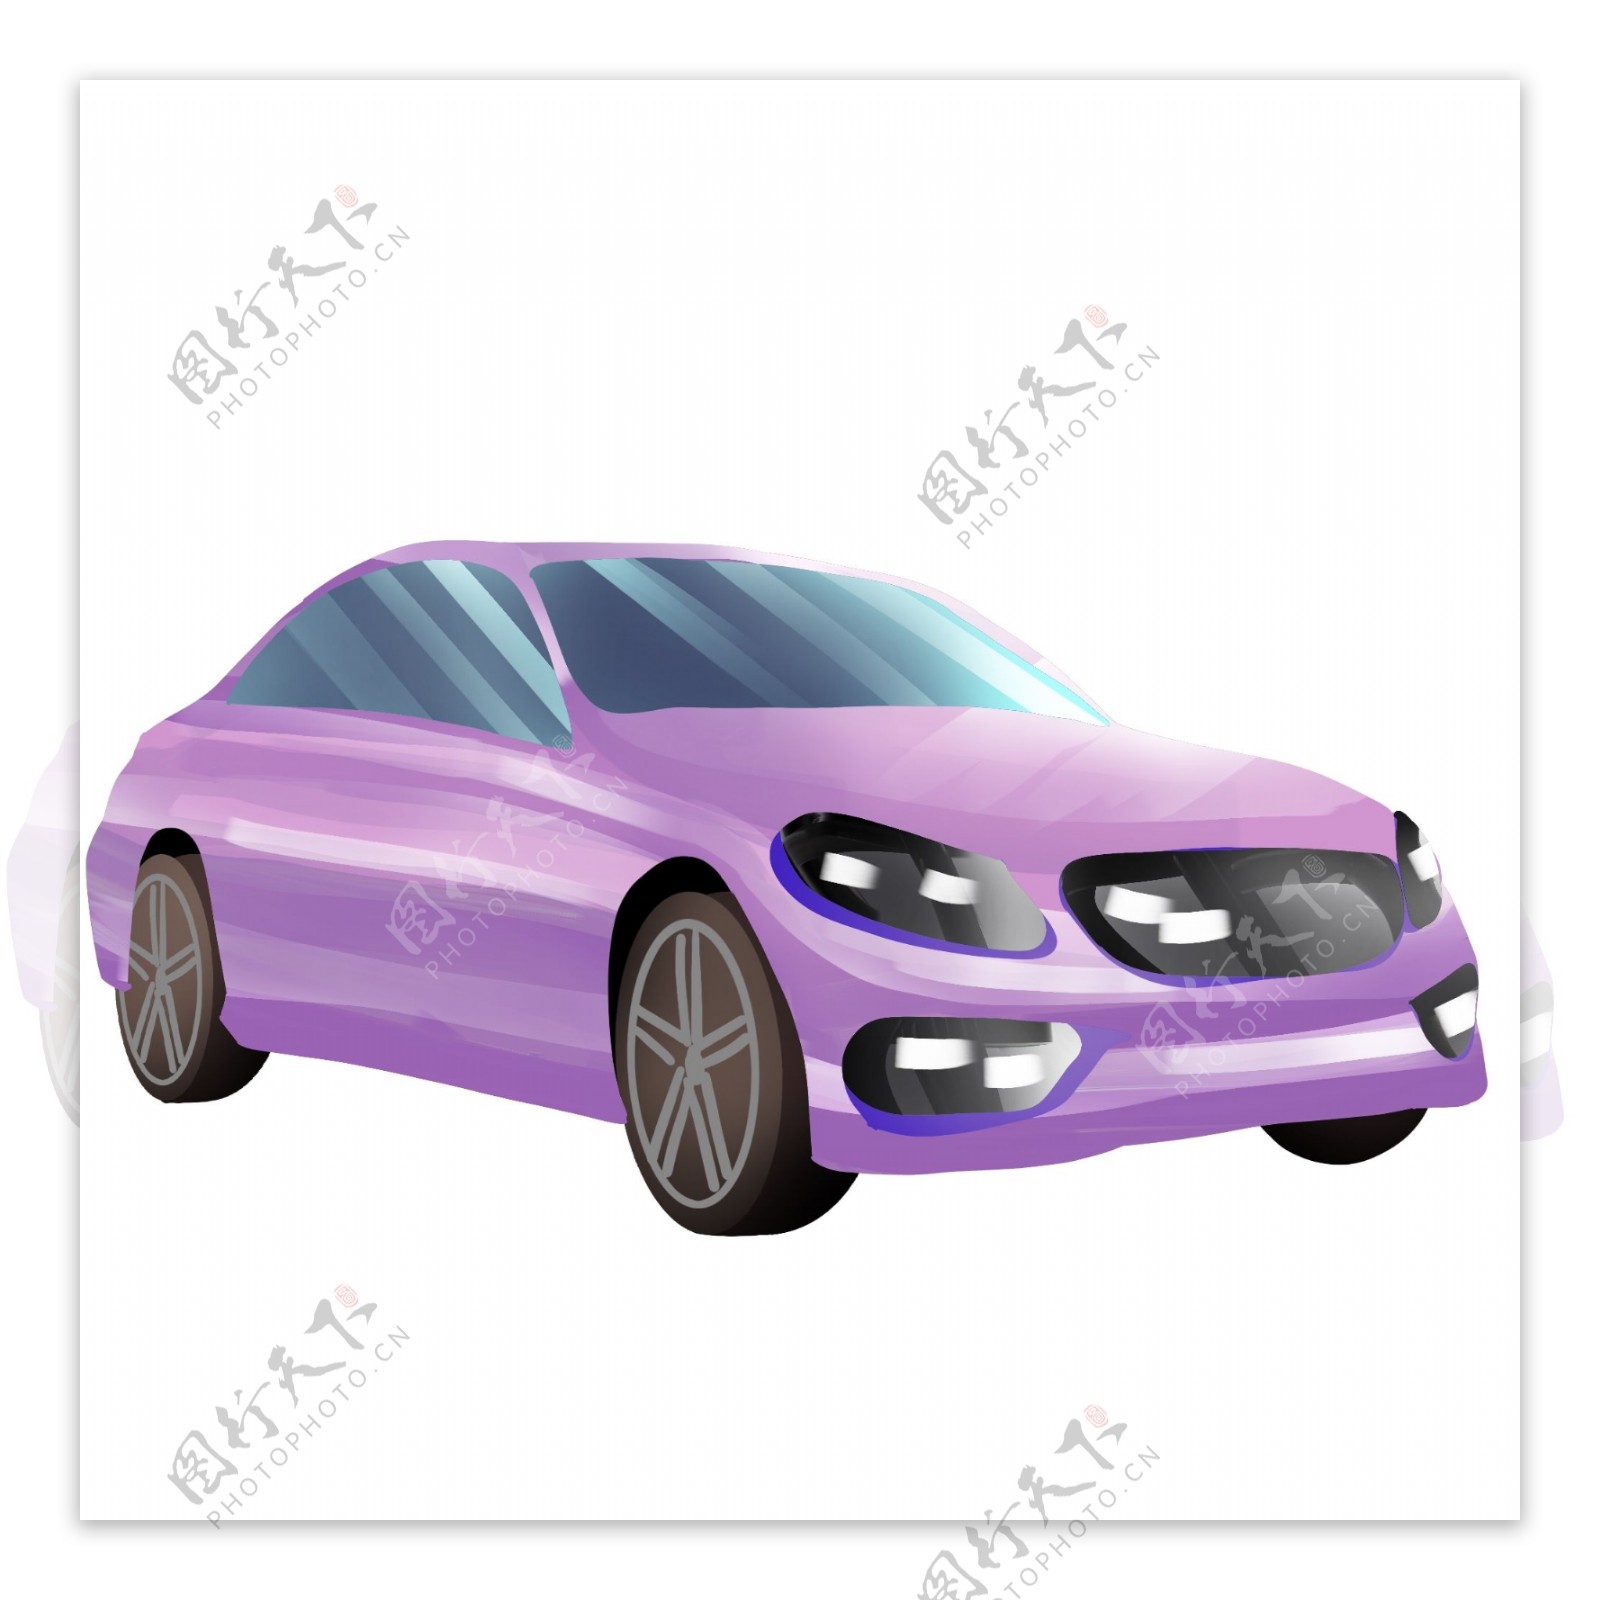 一辆紫色小轿车插图